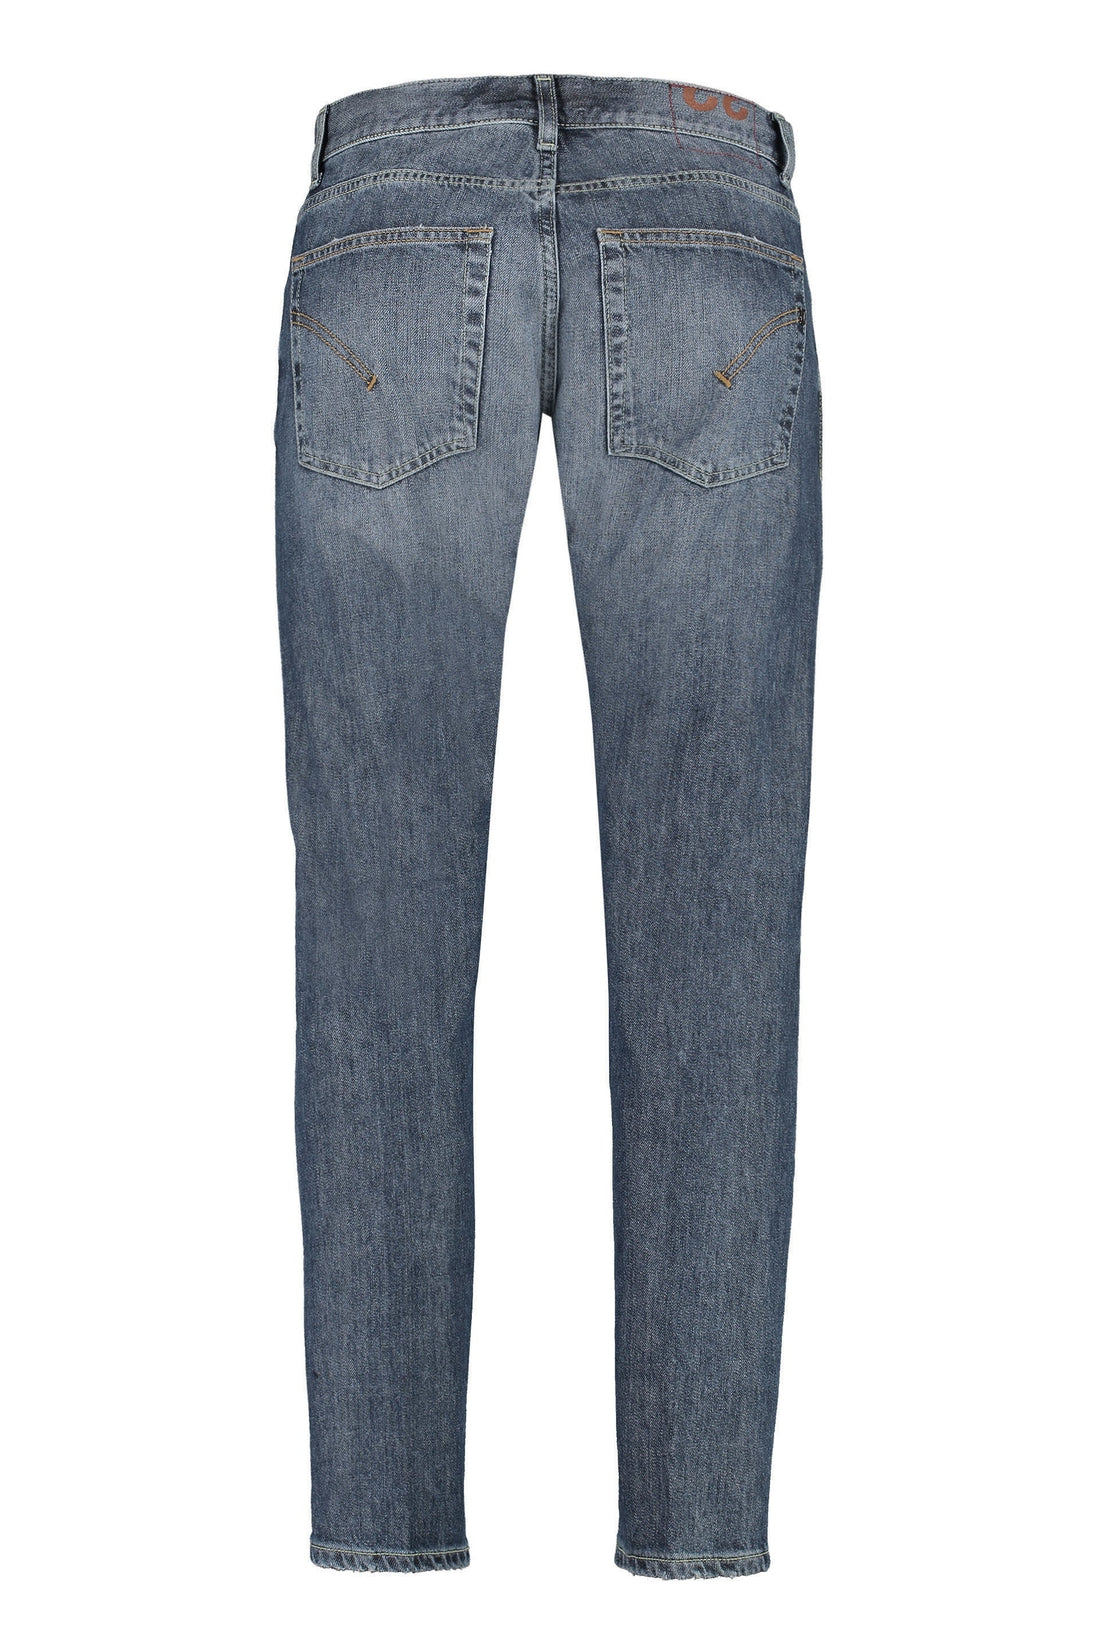 Dondup-OUTLET-SALE-Dian carrot-fit jeans-ARCHIVIST